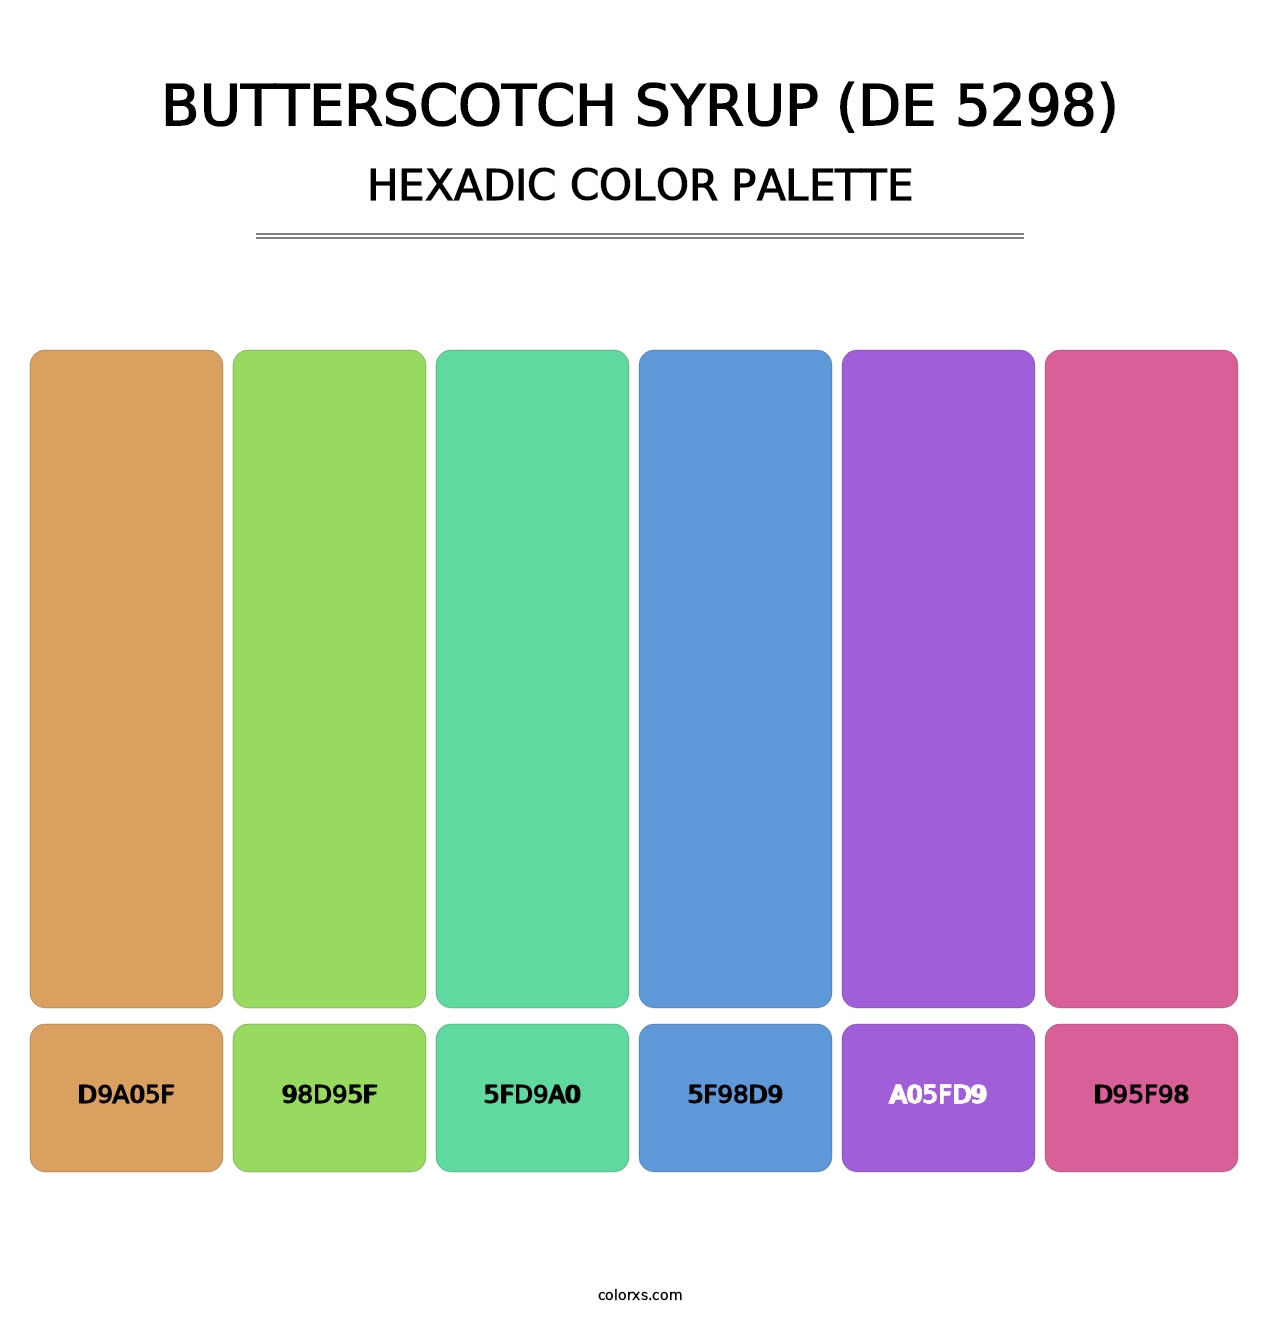 Butterscotch Syrup (DE 5298) - Hexadic Color Palette